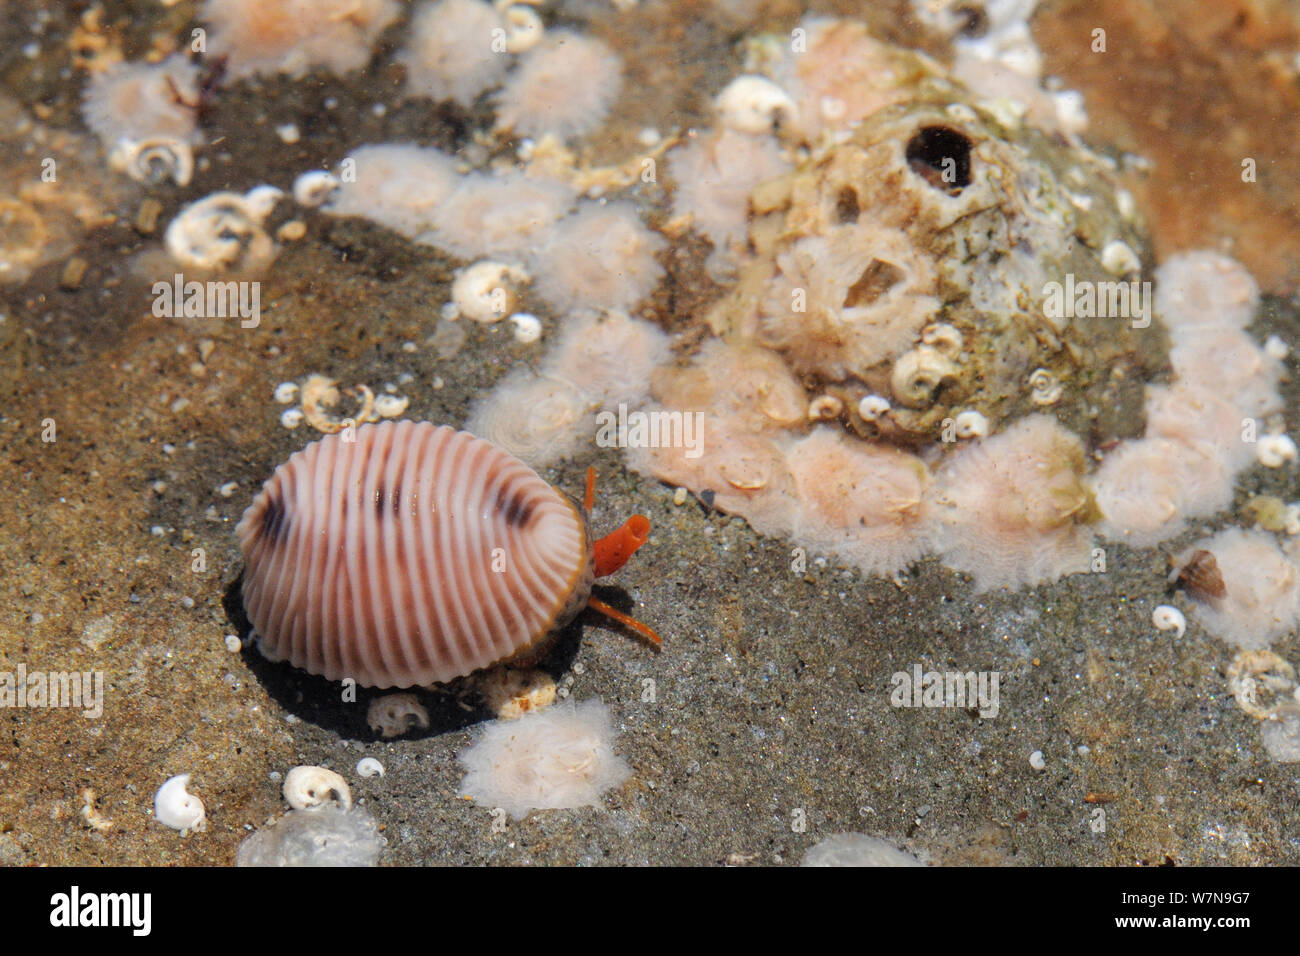 Gefleckte cowrie (Trivia monacha) Kriechen über barnacle verkrustete subtidal Rock mit Siphon und Tentakeln sichtbar, in der Nähe von Falmouth, Cornwall, UK, August. Stockfoto